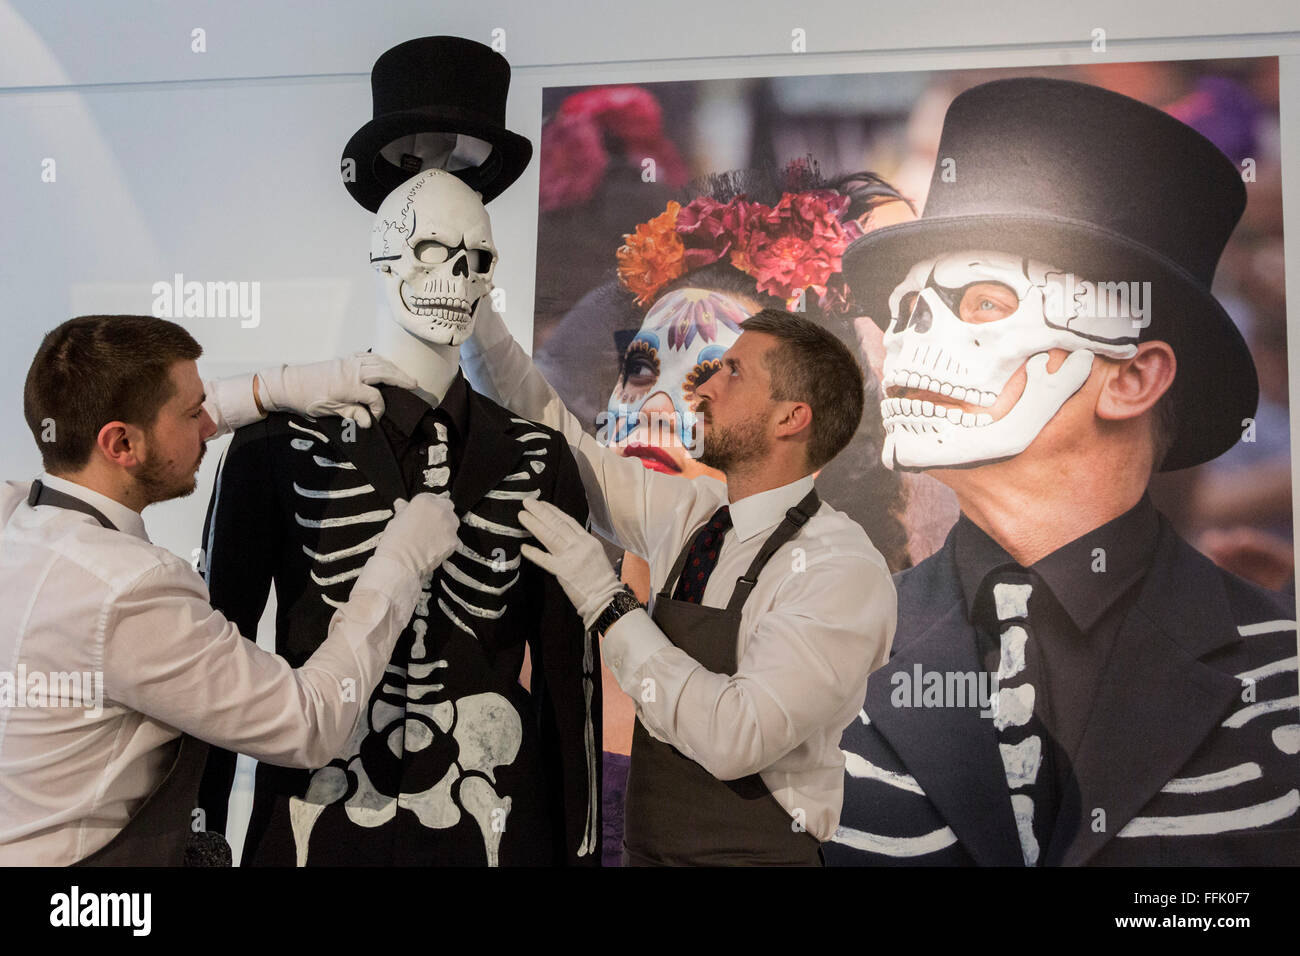 London, UK. 15. Februar 2016. Tag der Toten Kostüm mit Skull Maske getragen  von Daniel Craig, est GBP 12.000-18 000. Christies vorhanden 24 viele James  Bond 007 Erinnerungsstücken Spectre, 24.-Bond-Film zu feiern.